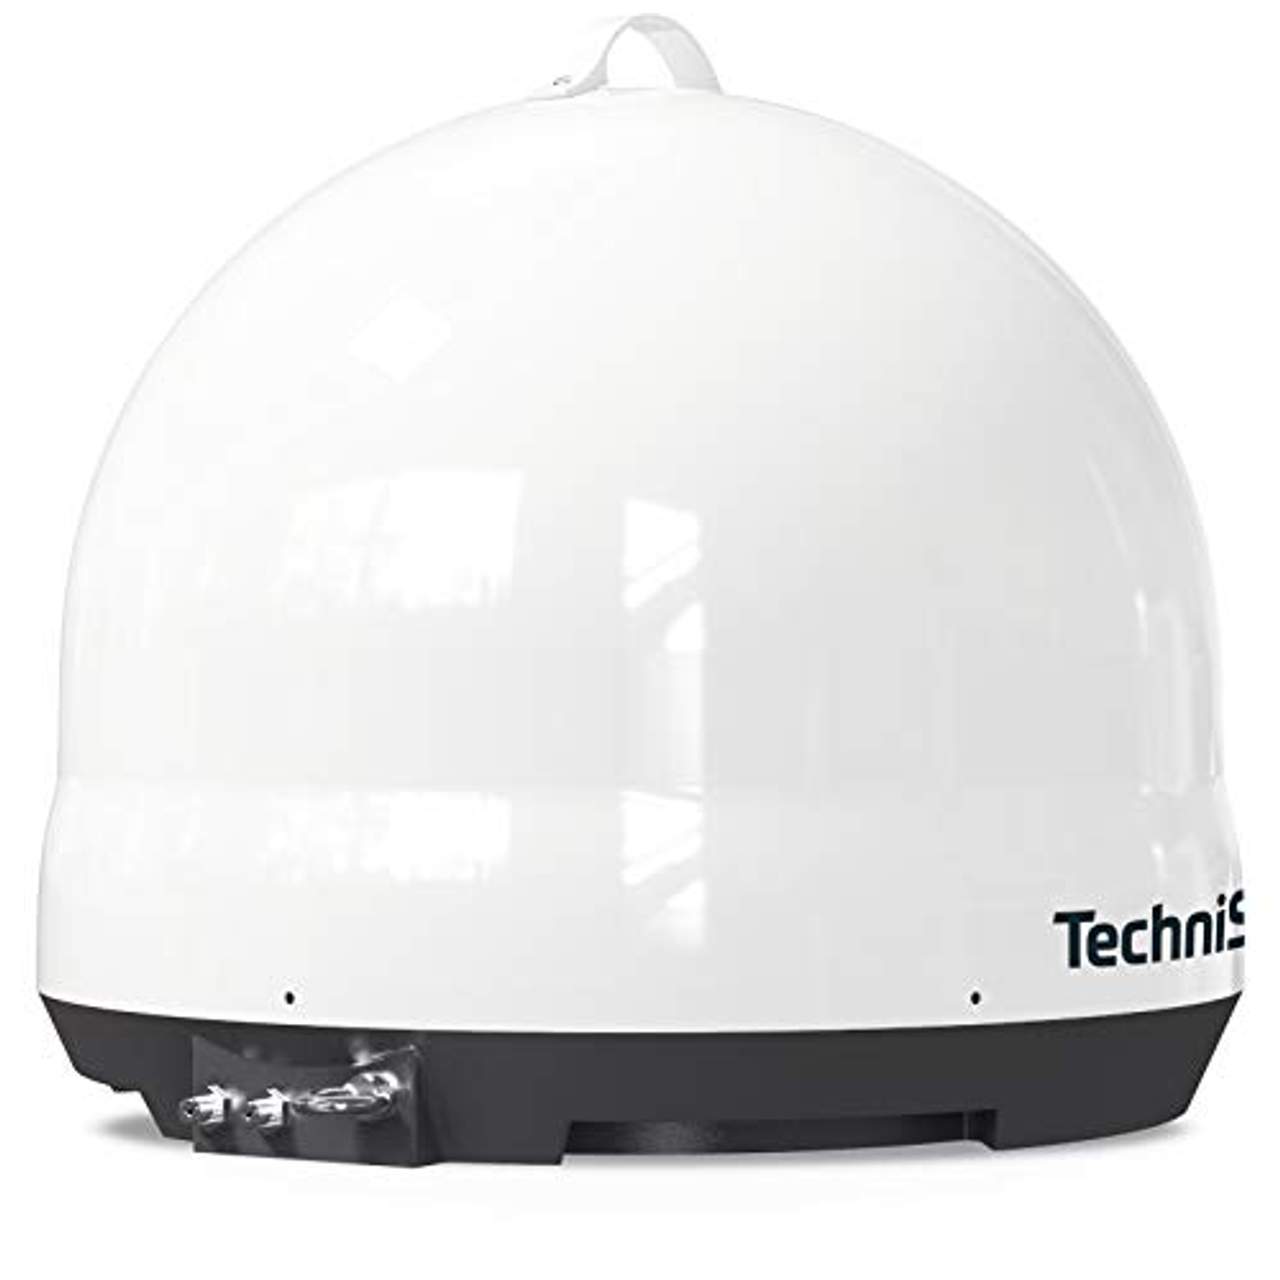 TechniSat Skyrider Dome Vollautomatische Sat-Anlage (Twin)